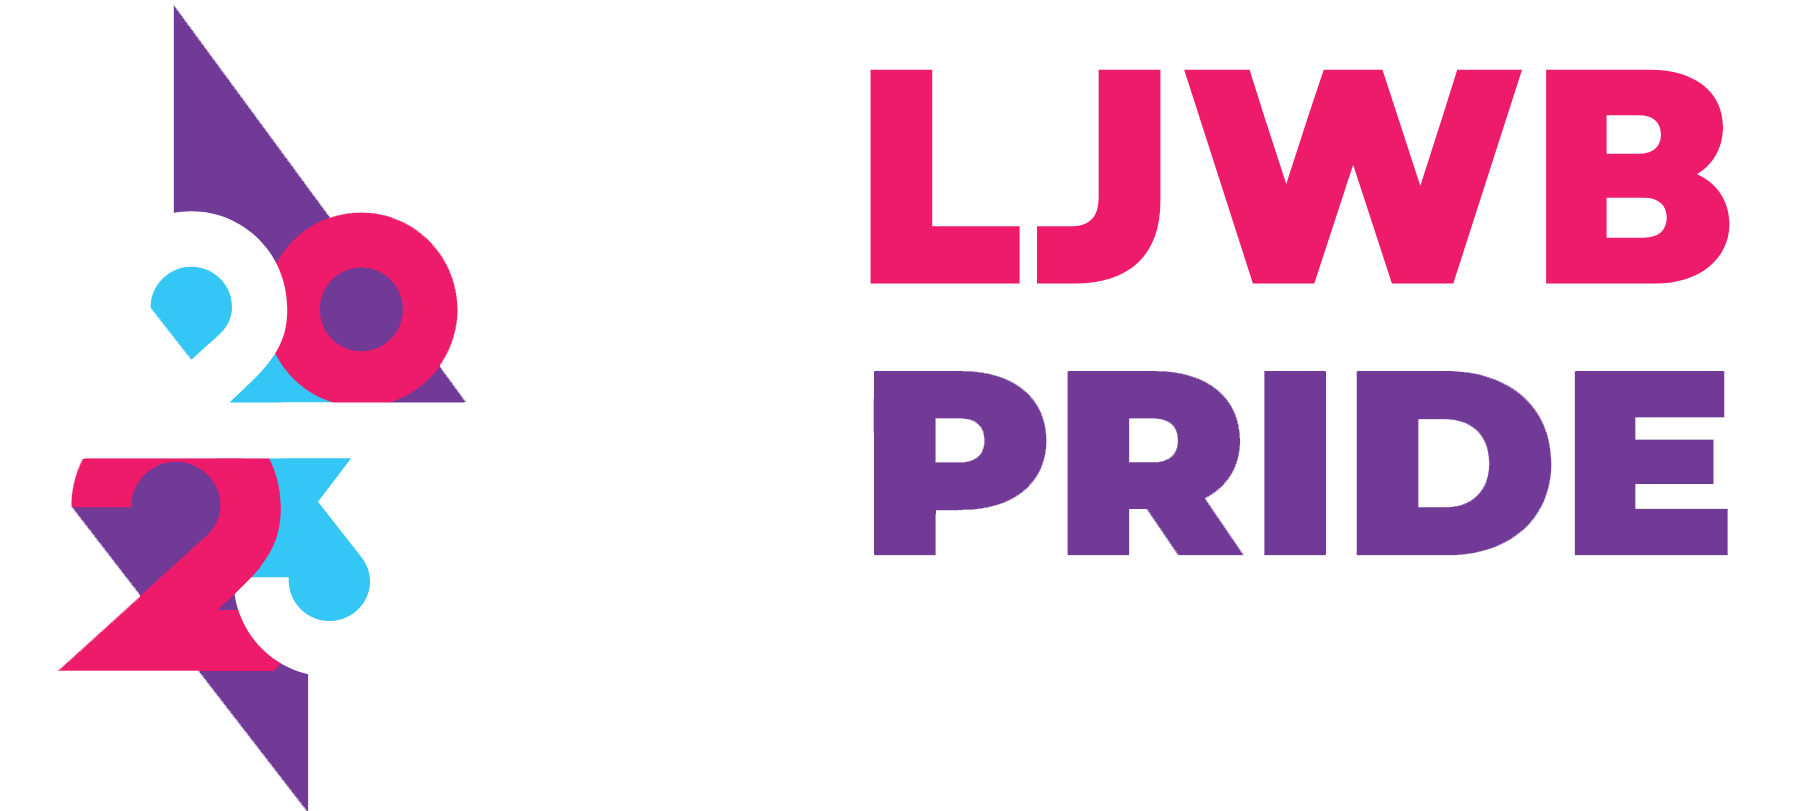 LJWB Pride Awards